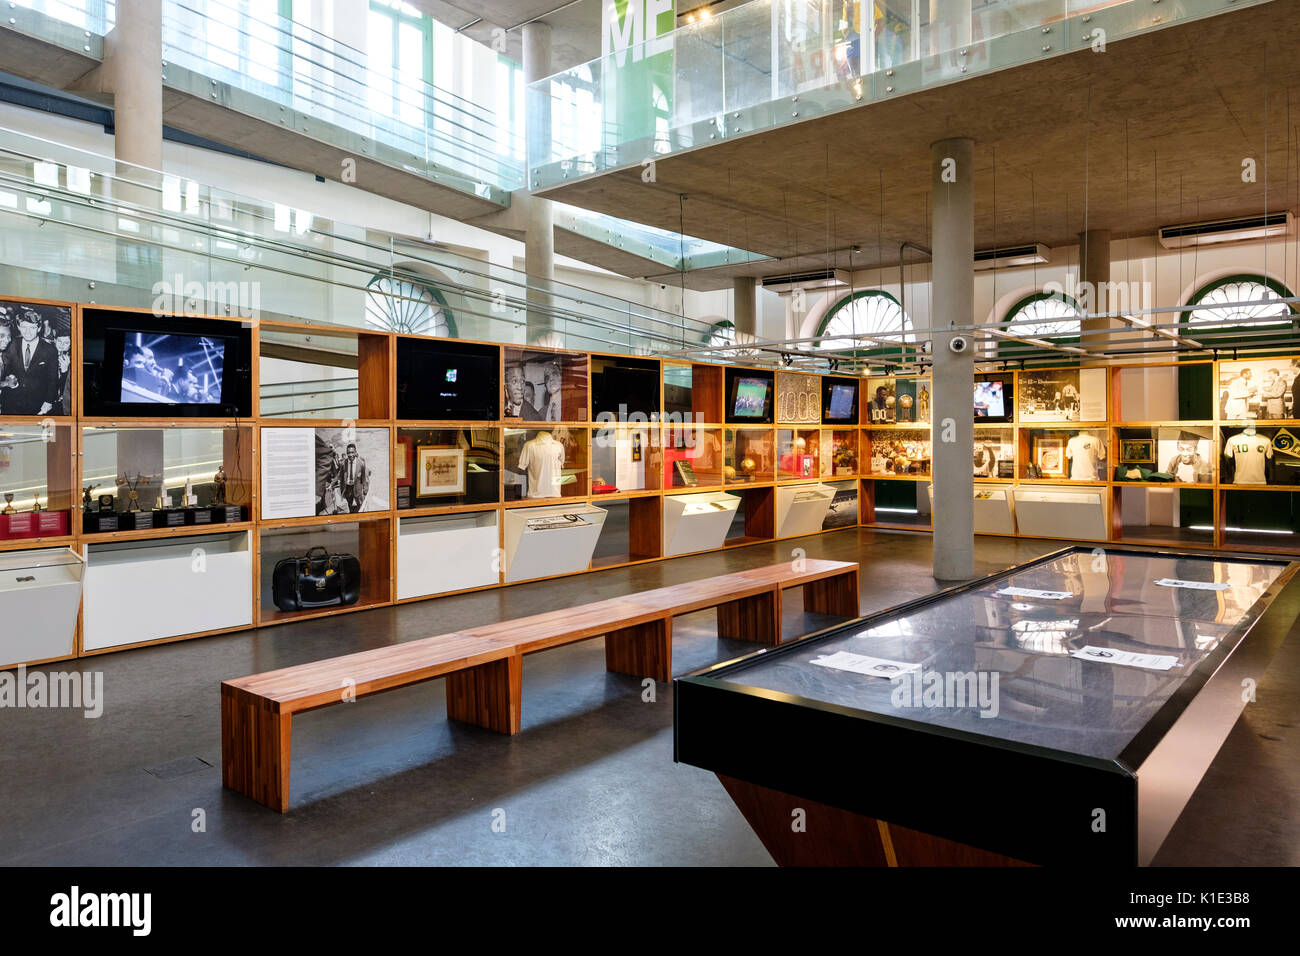 Ground Floor Displays Of The Pele Museum Museu Pelé Dedicated To The